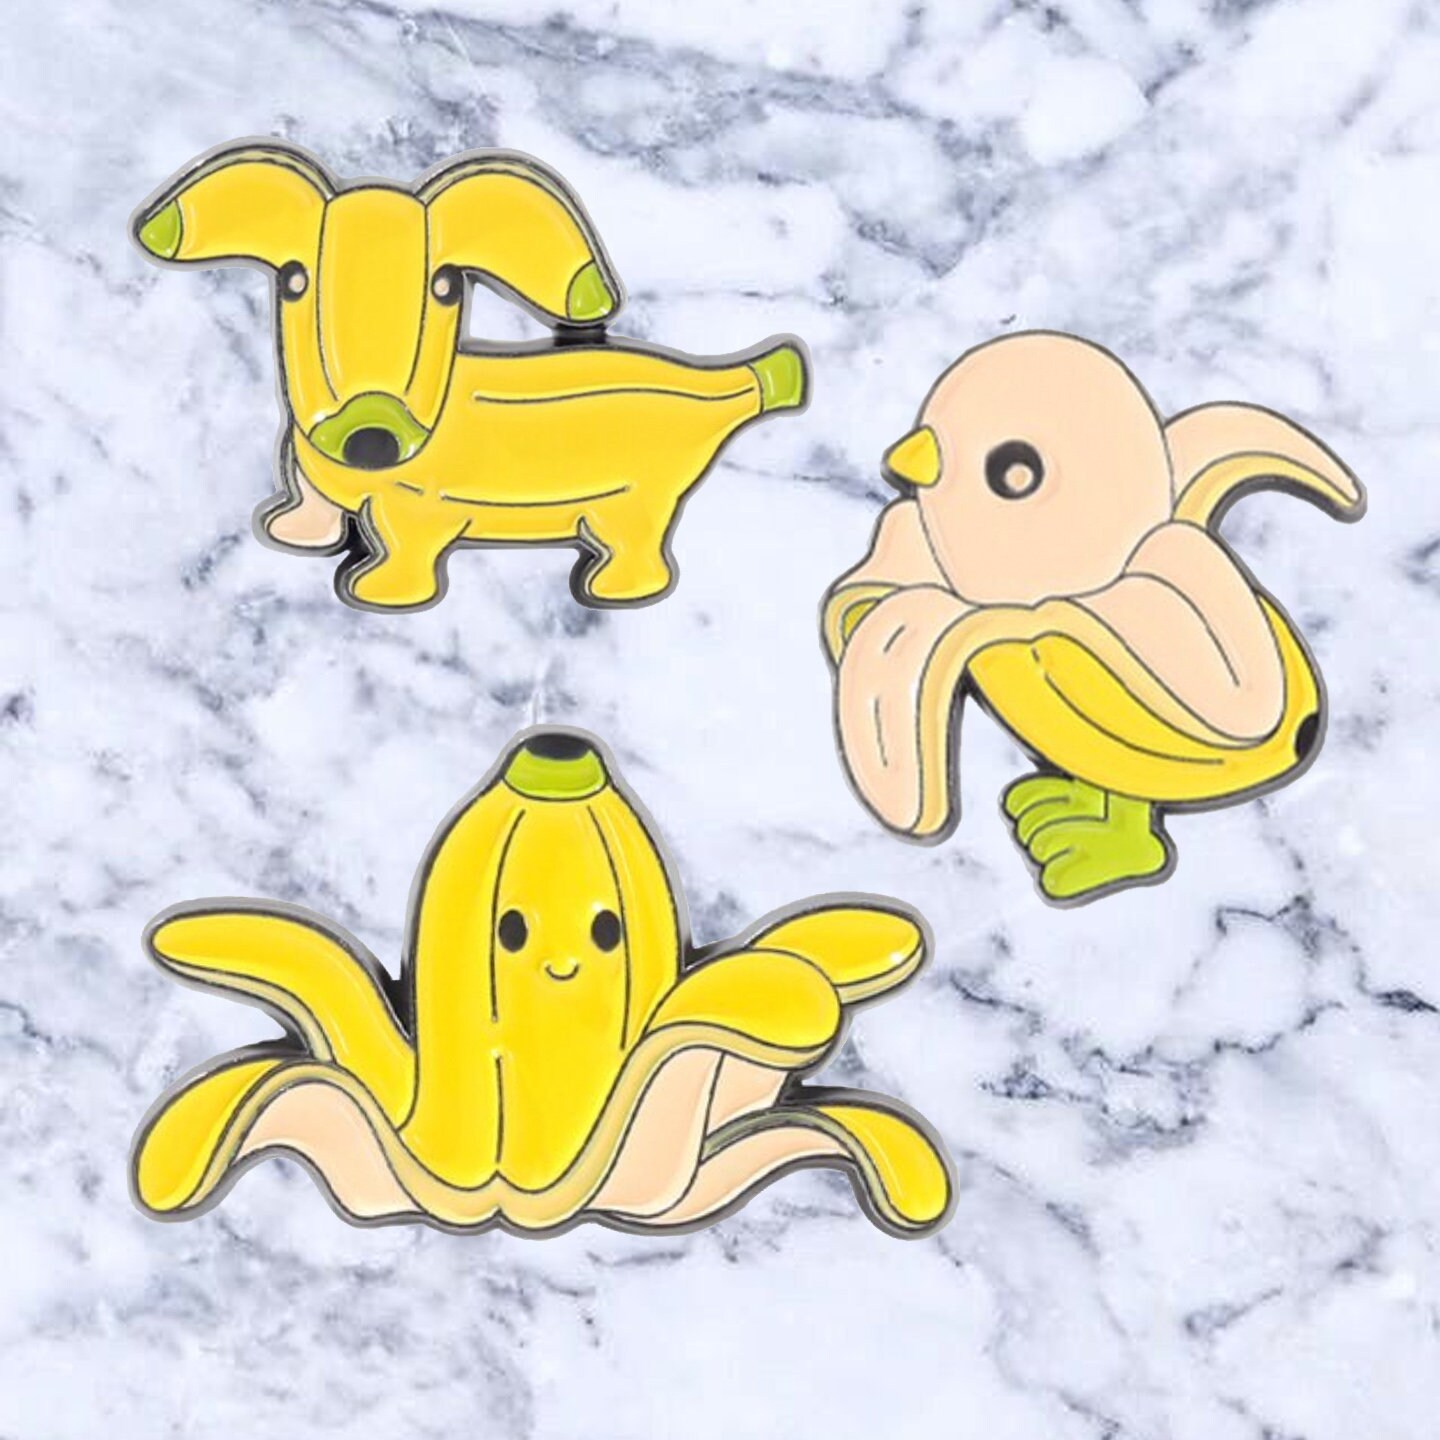 Kawaii Banana Enamel Pin Cute Enamel Pin Fruit Enamel Pins 